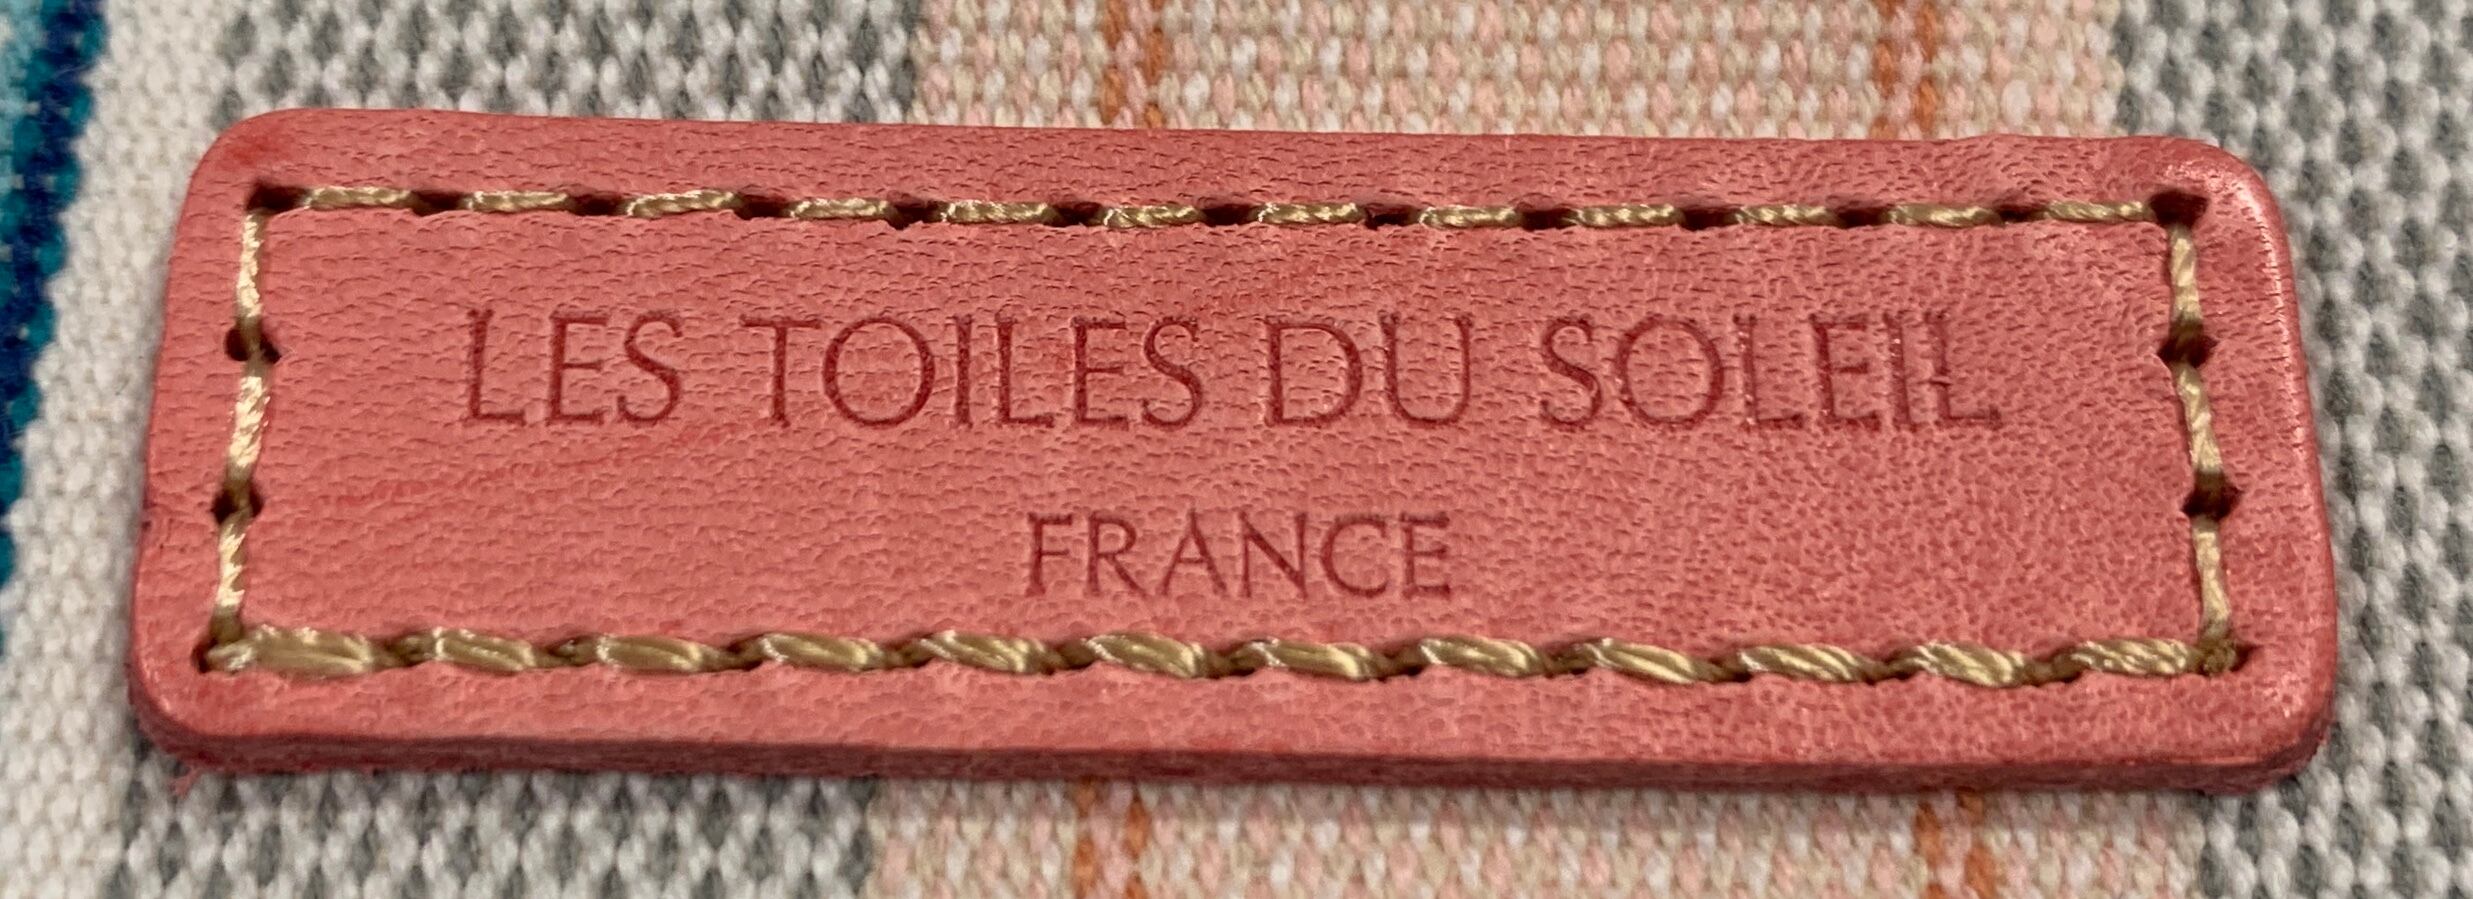 【LES TOILES DU SOLEIL】レザーミニウォレット Marie Antoinette ピンク